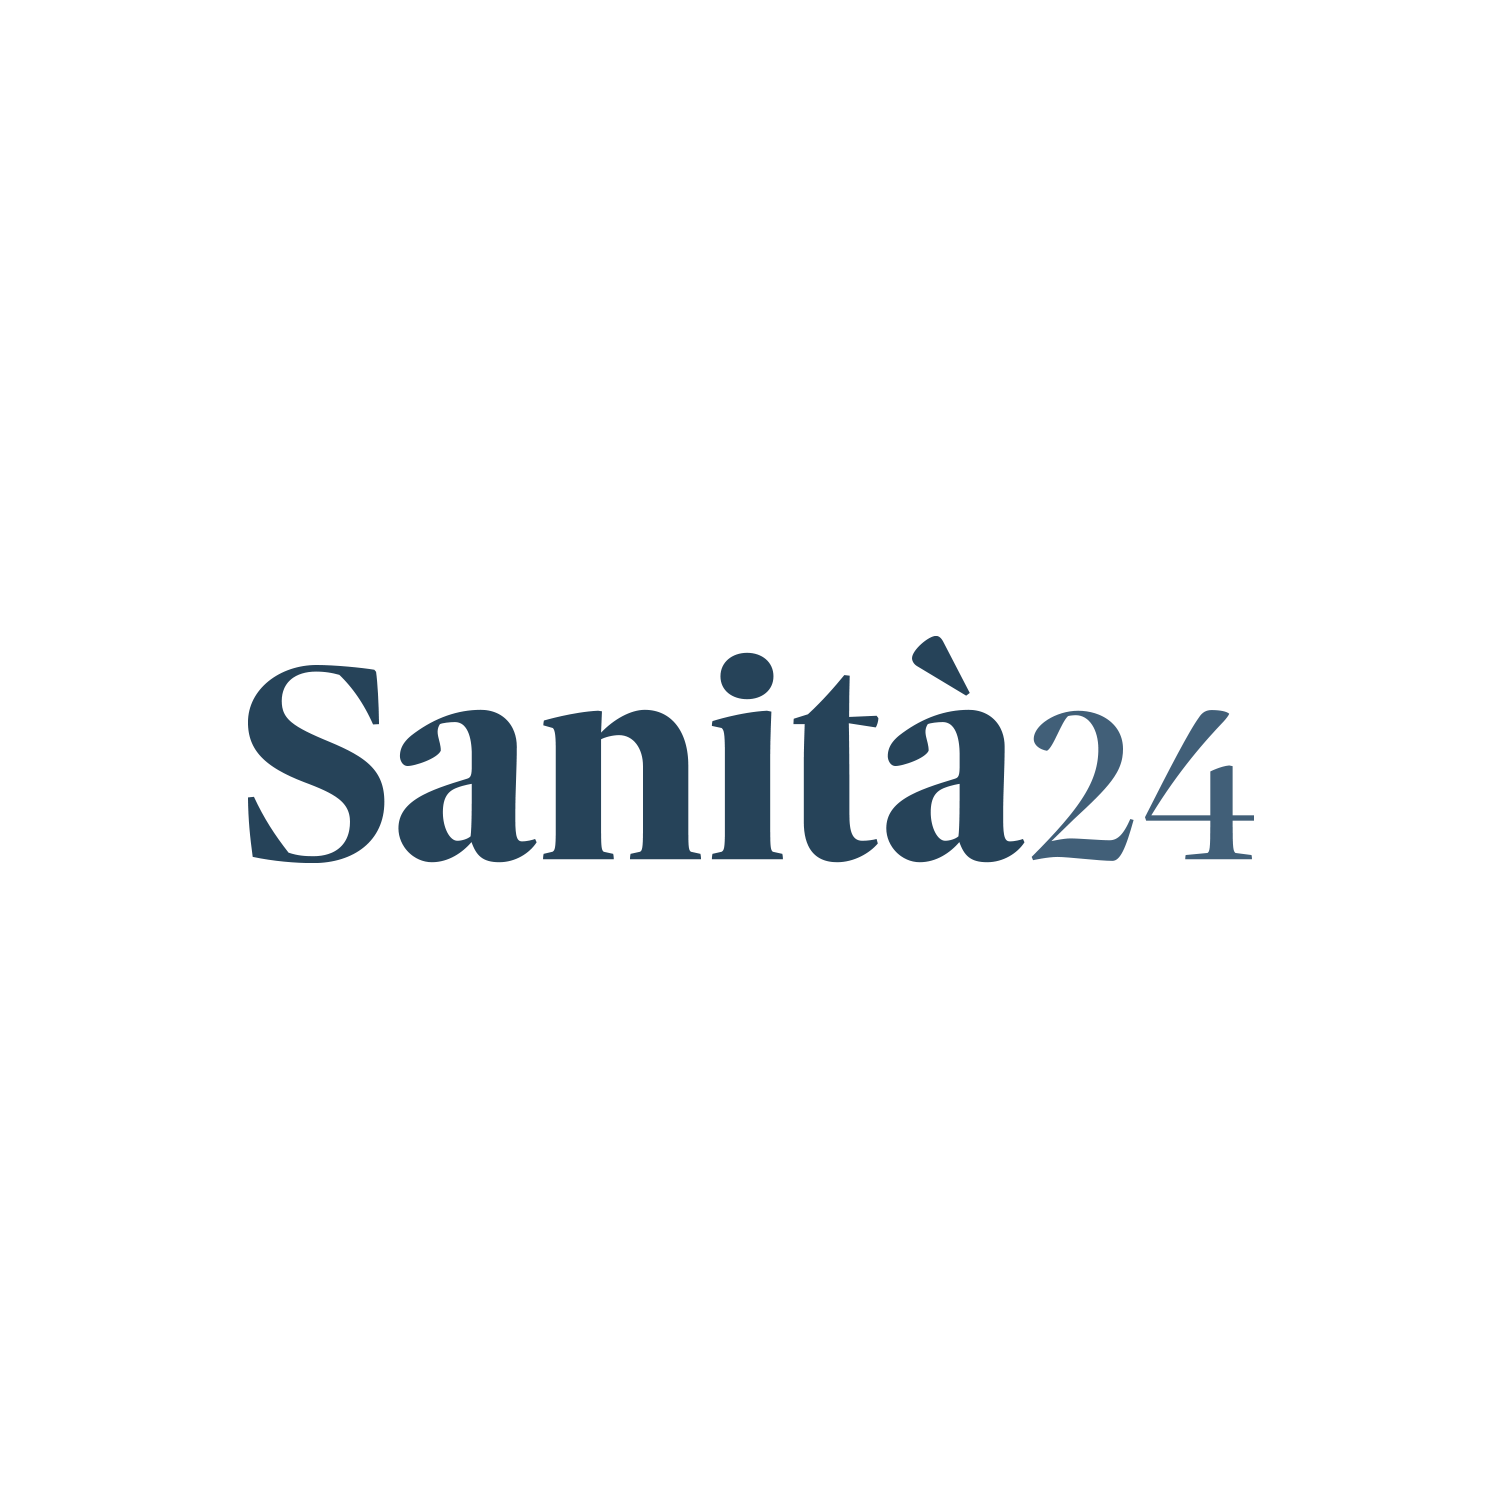 sanita24